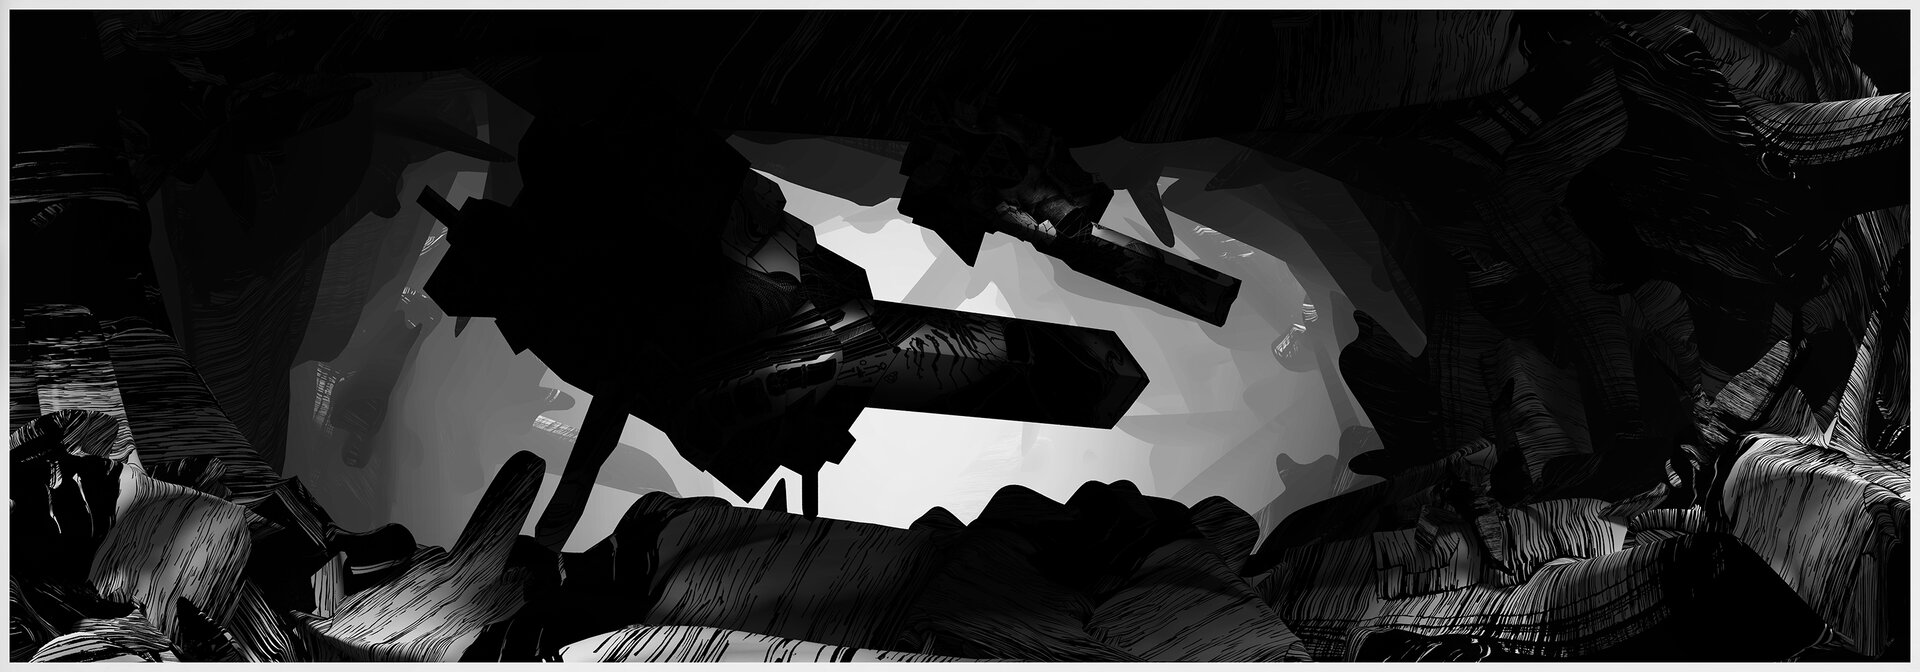 Ilustracja przedstawia obraz Jakuba Jaszewskiego „XRYT‑003”. Ukazuje abstrakcję z grą świateł. Środkowa część jest jasna. Na tym jasnym tle znajdują się kanciaste elementy. Dokoła przestrzeń wypełniona jest różnymi kształtami w kolorach szarym i czarnym.